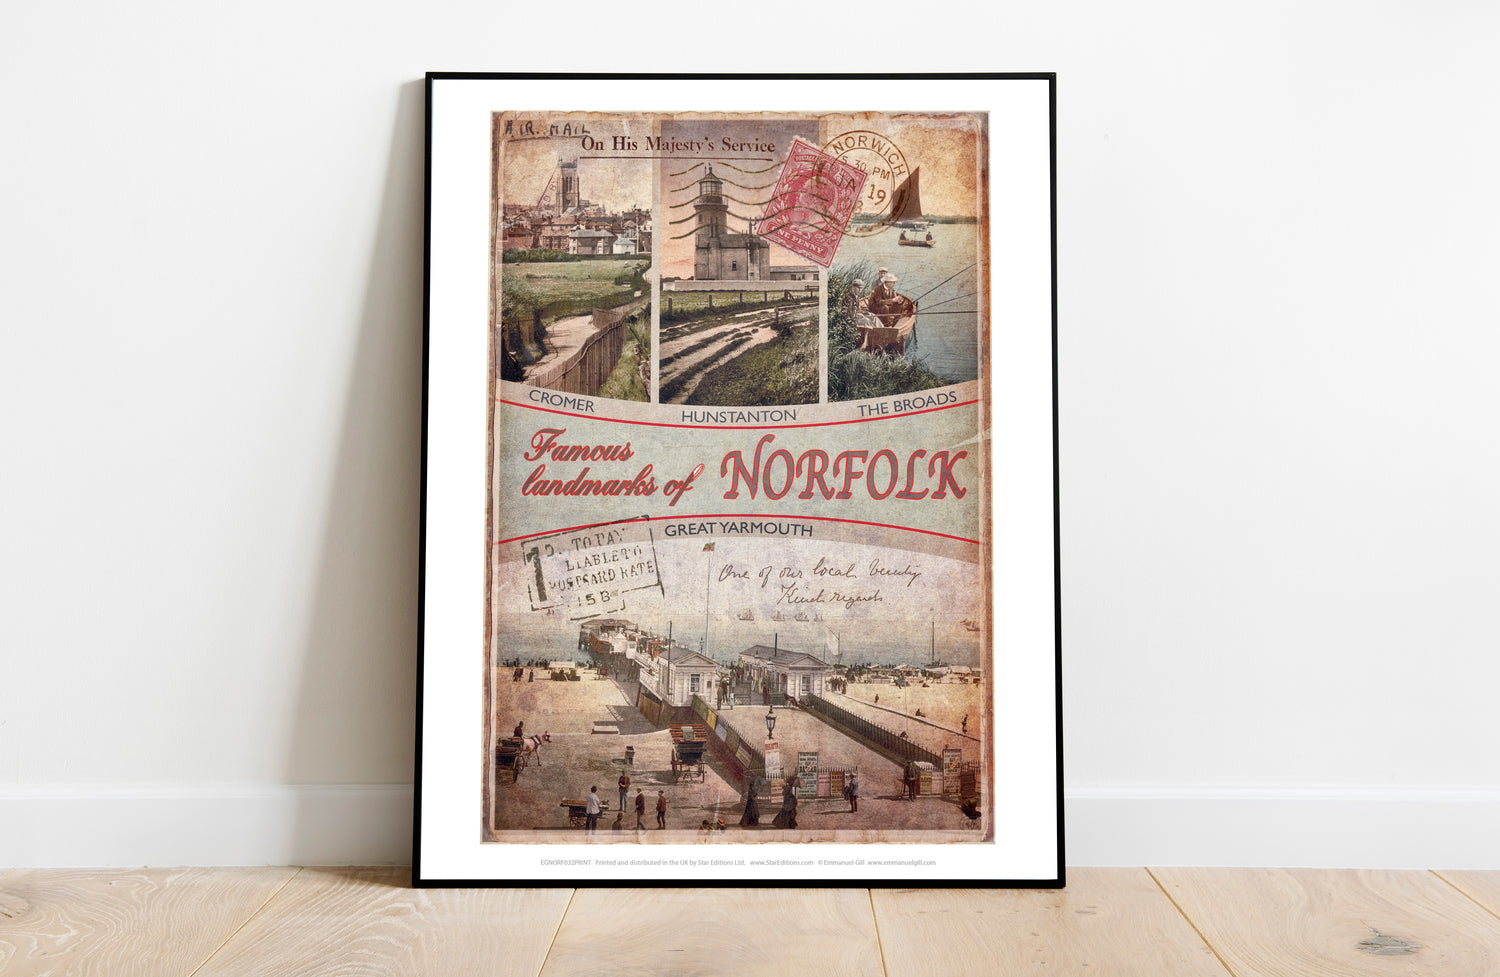 Famous Landmarks of Norfolk - Art Print